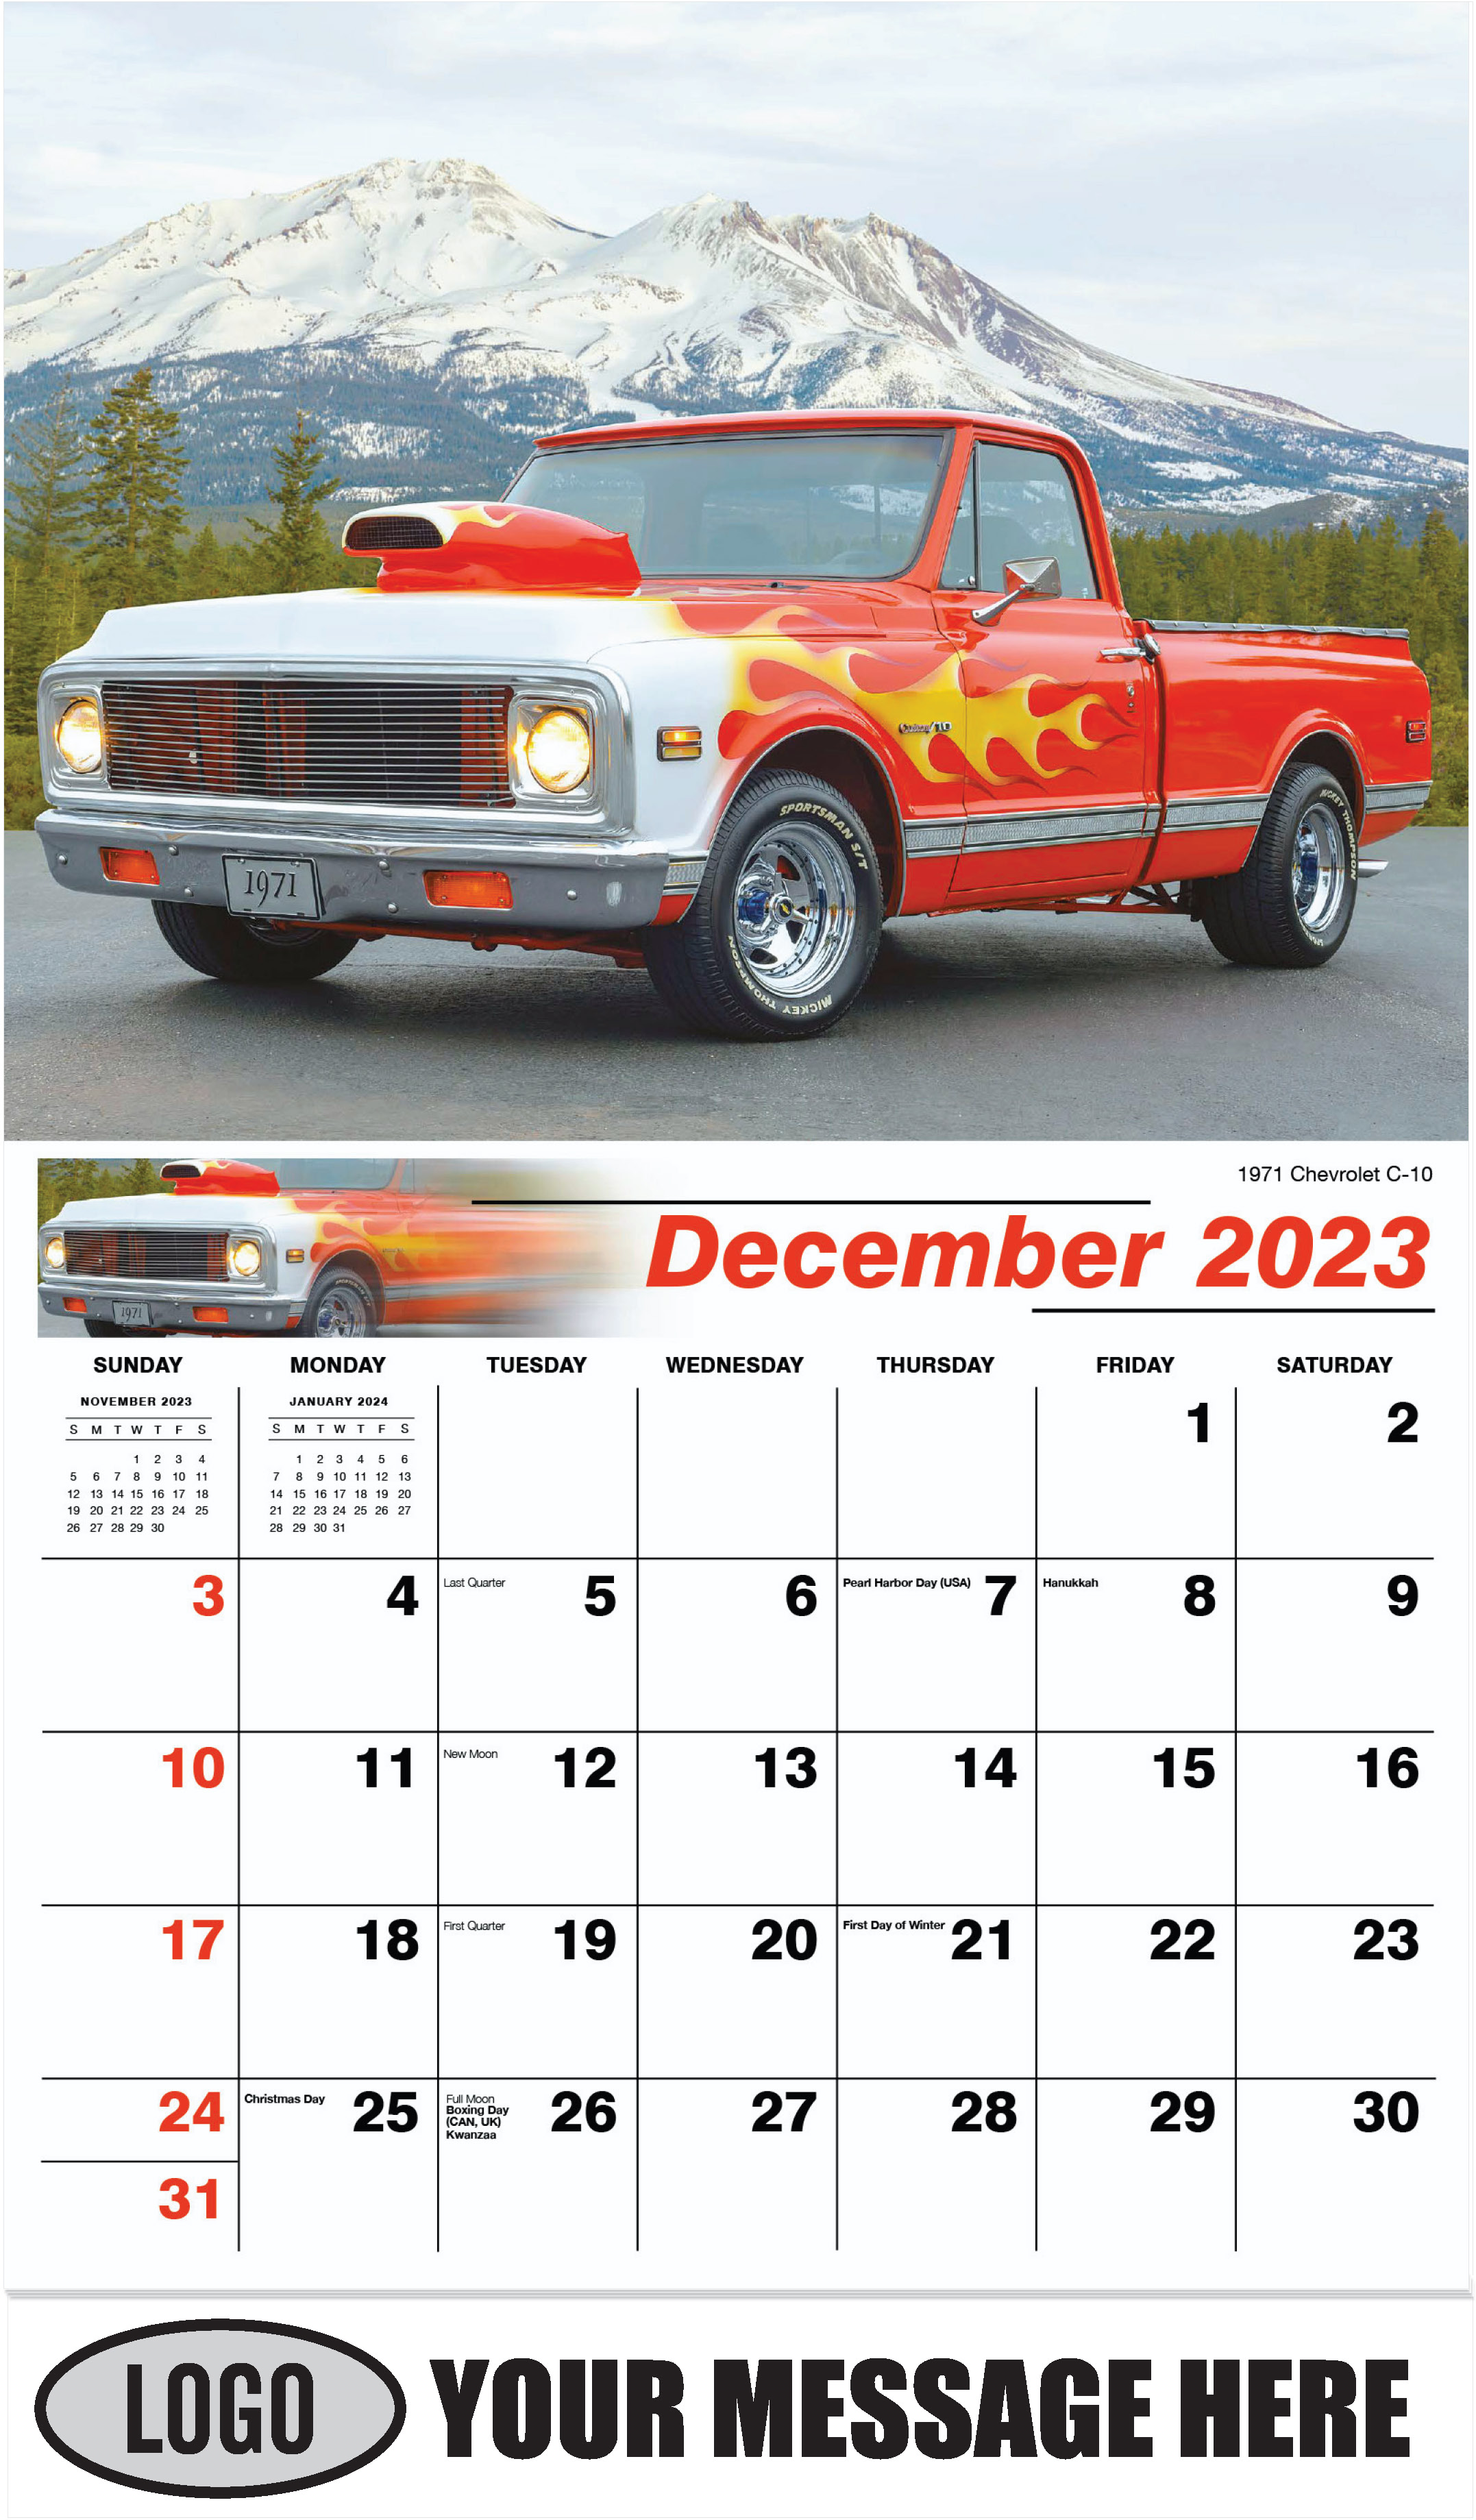 1971 Chevrolet C-10 - December 2023 - Pumped Up Pickups 2023 Promotional Calendar